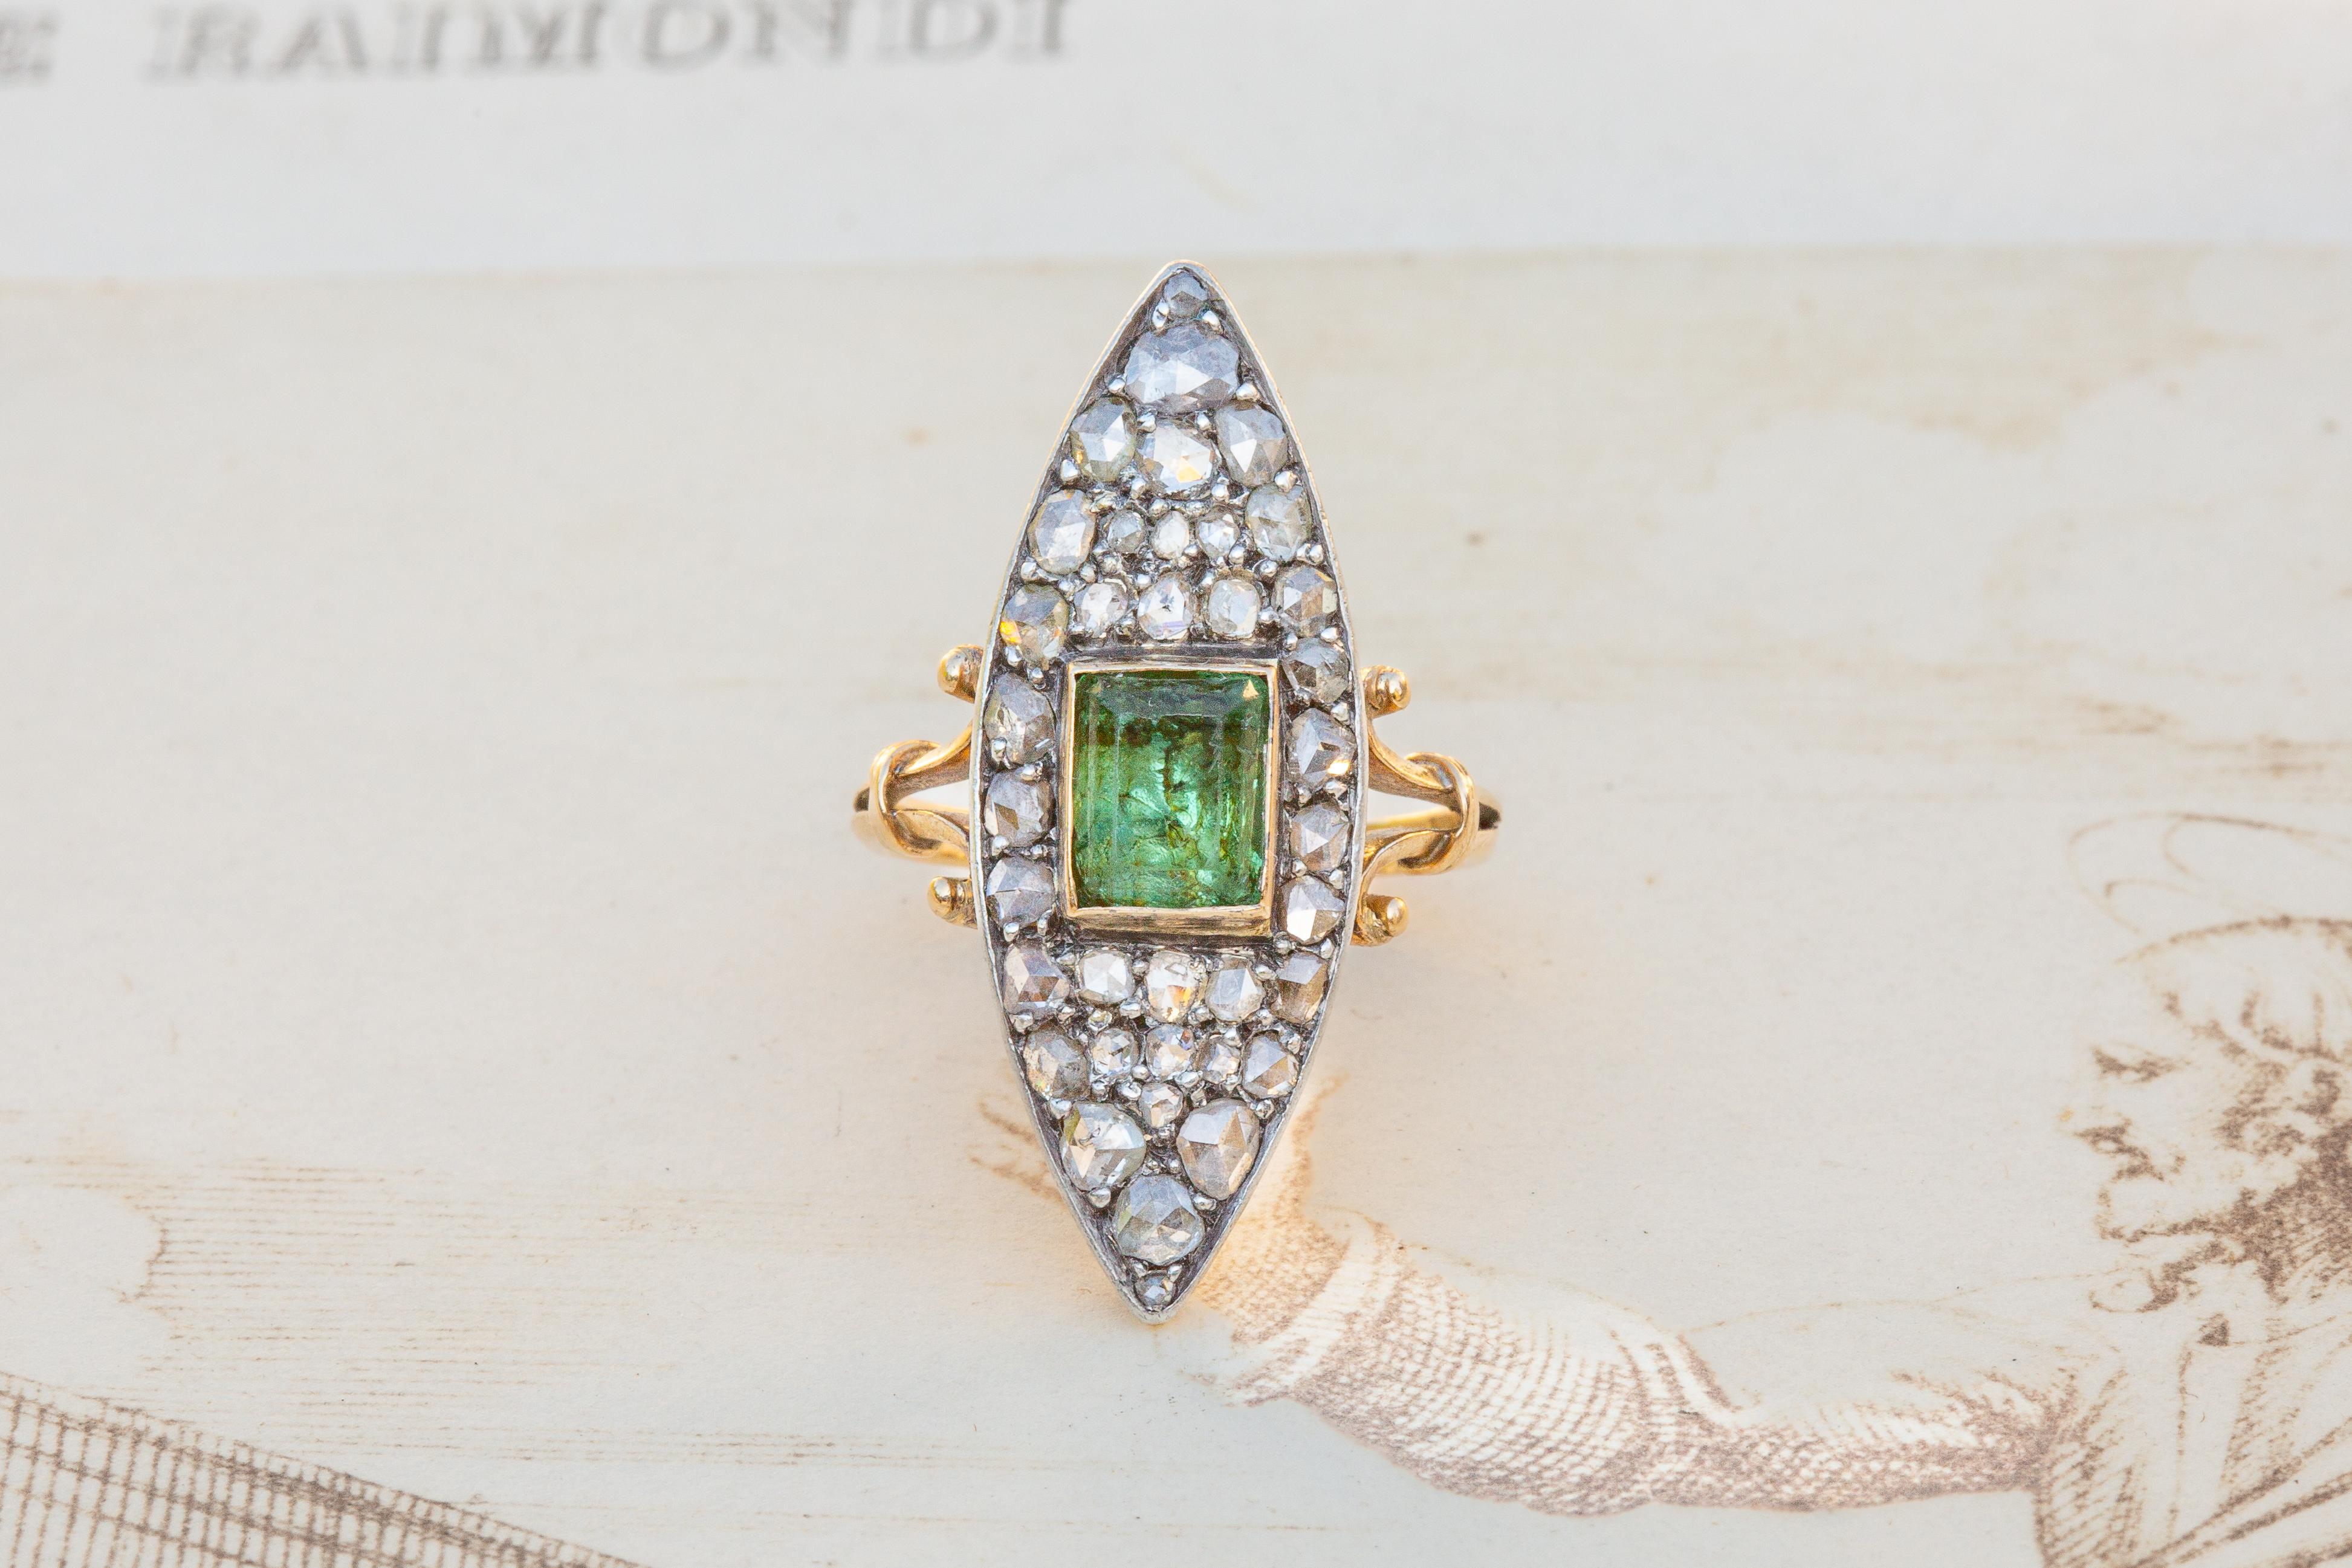 Une superbe bague victorienne en or 18 carats datant d'environ 1890. Cette grappe en forme de navette est composée de 37 diamants de taille rose sertis d'argent entourant une pierre précieuse péridot de taille émeraude. Le magnifique péridot vert